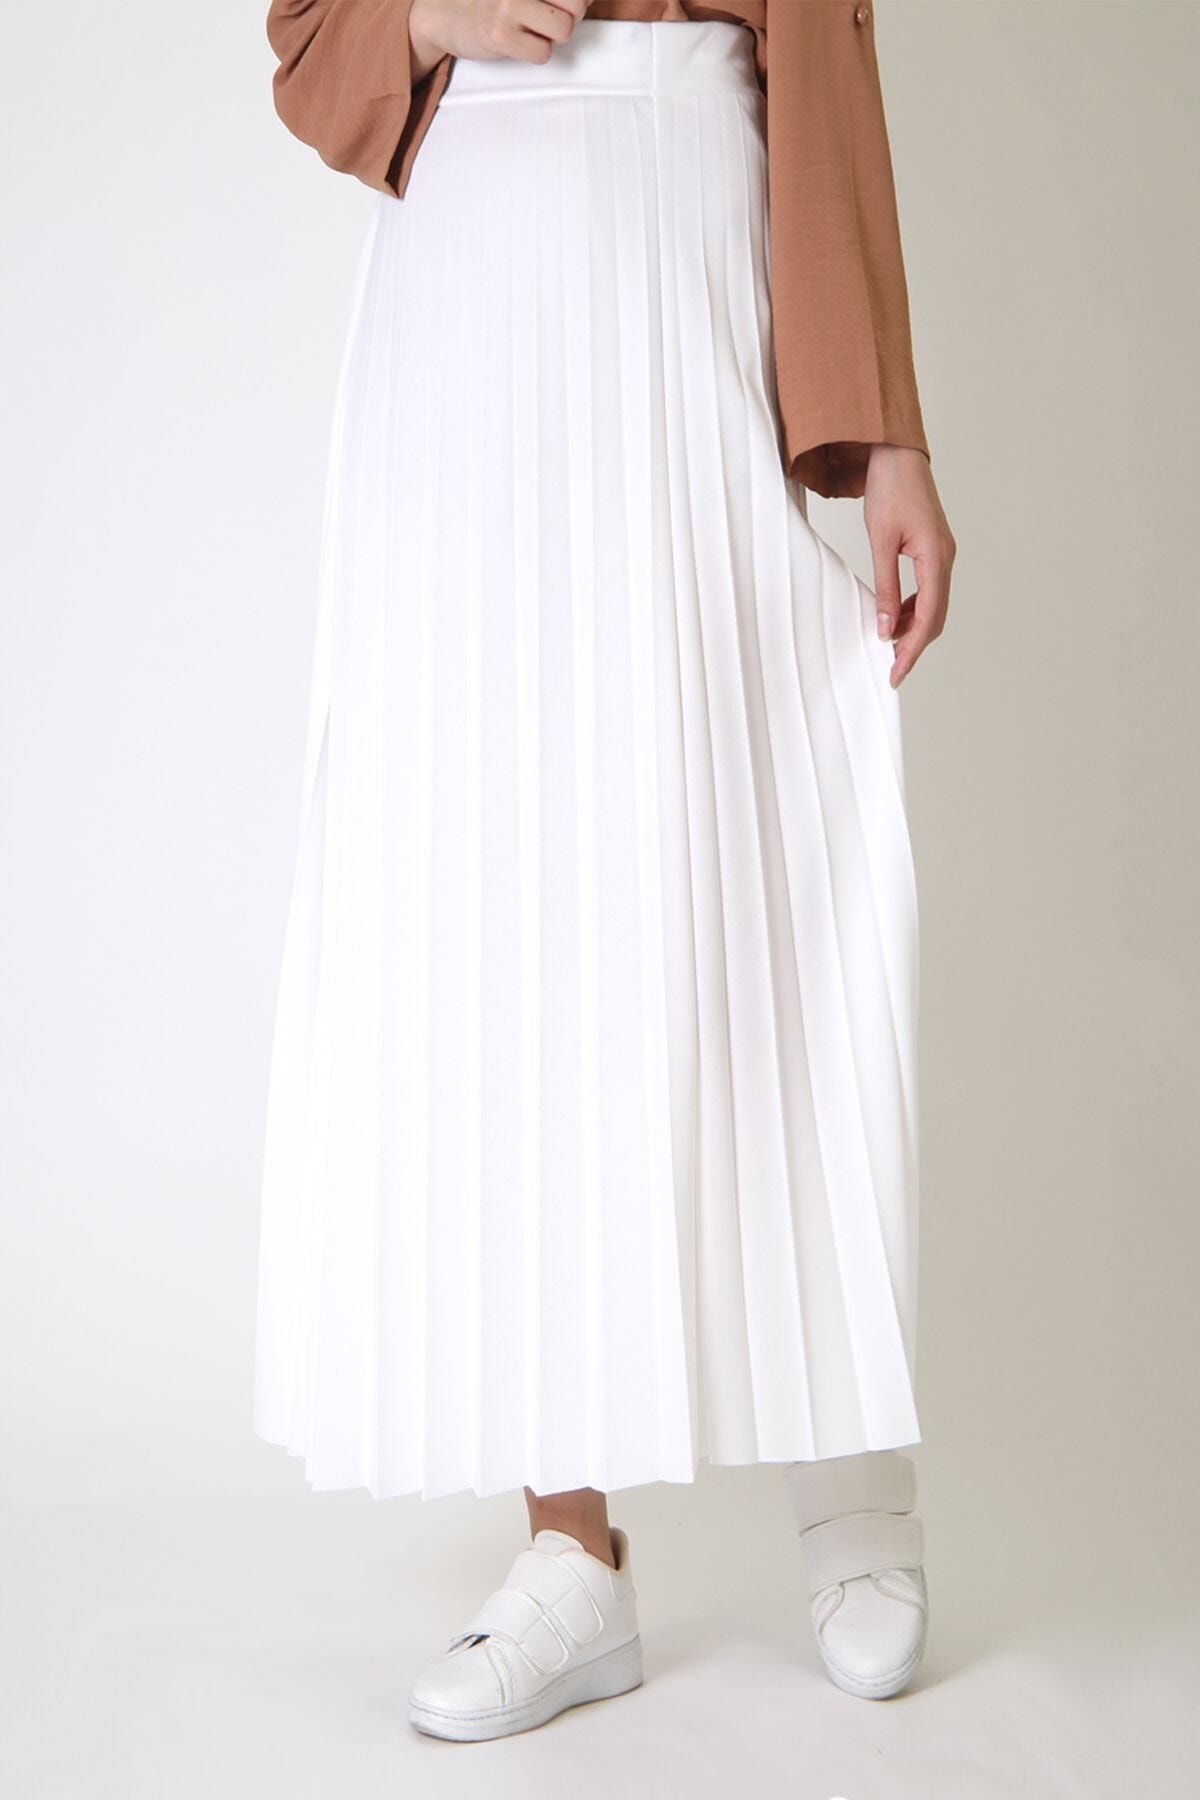 Essah Moda Kadın Beyaz Piliseli Uzun Etek - Me000129